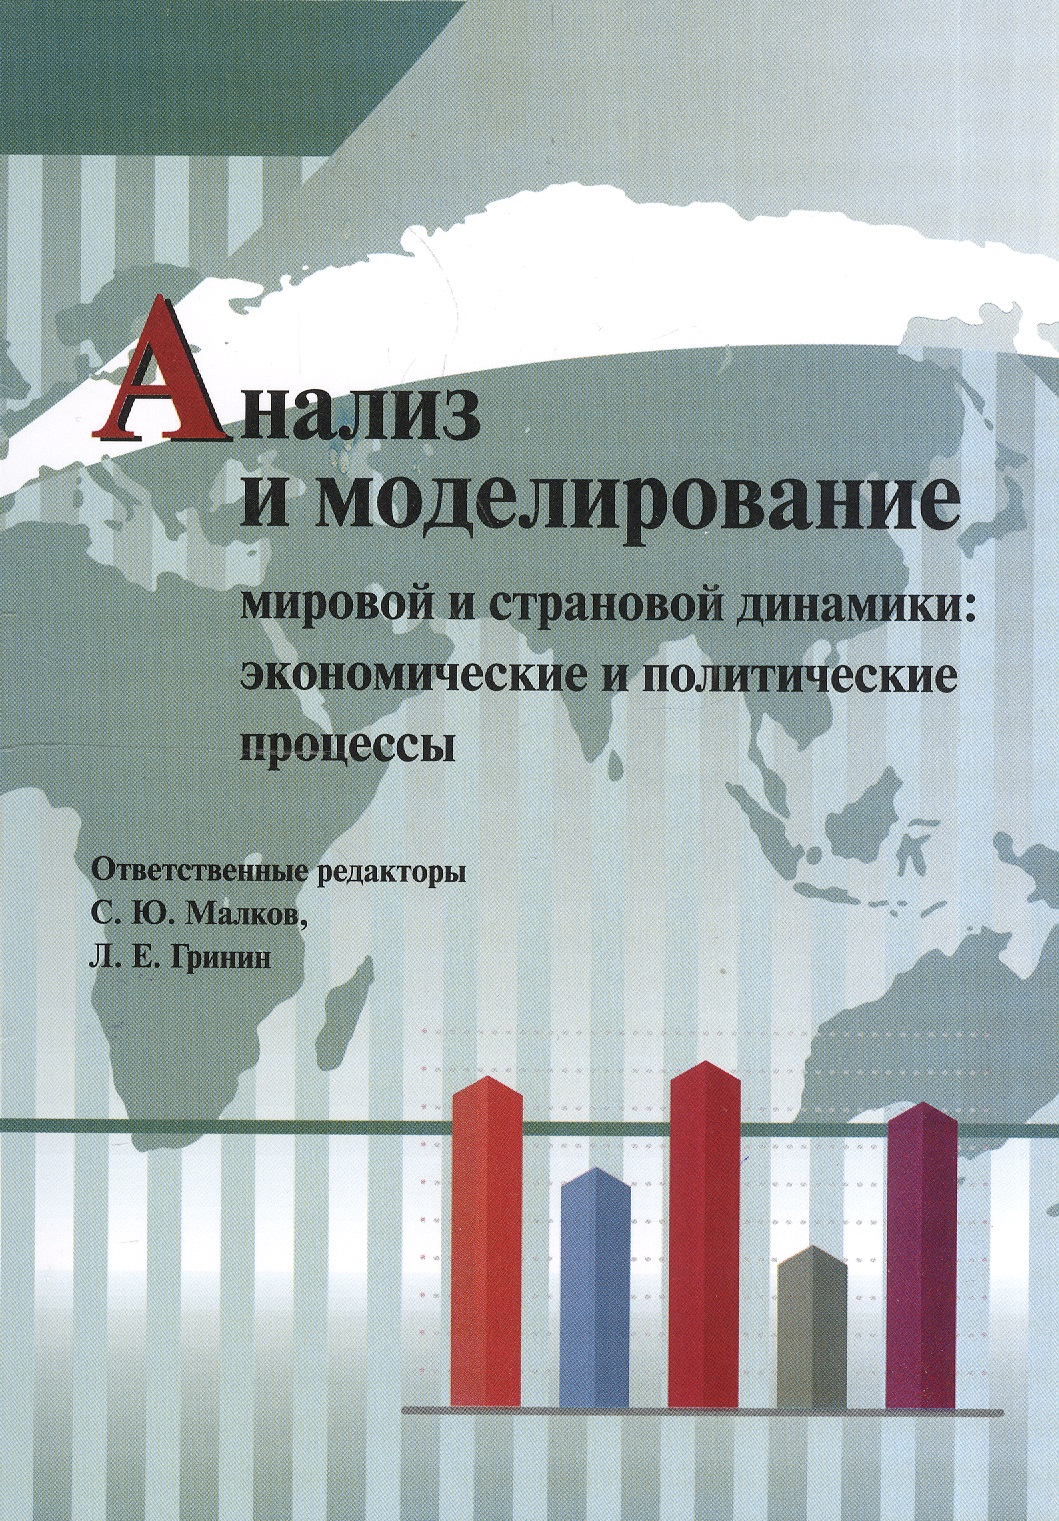 Гринин Леонид Ефимович Анализ и моделирование мировой и страновой динамики: экономические и политические процессы